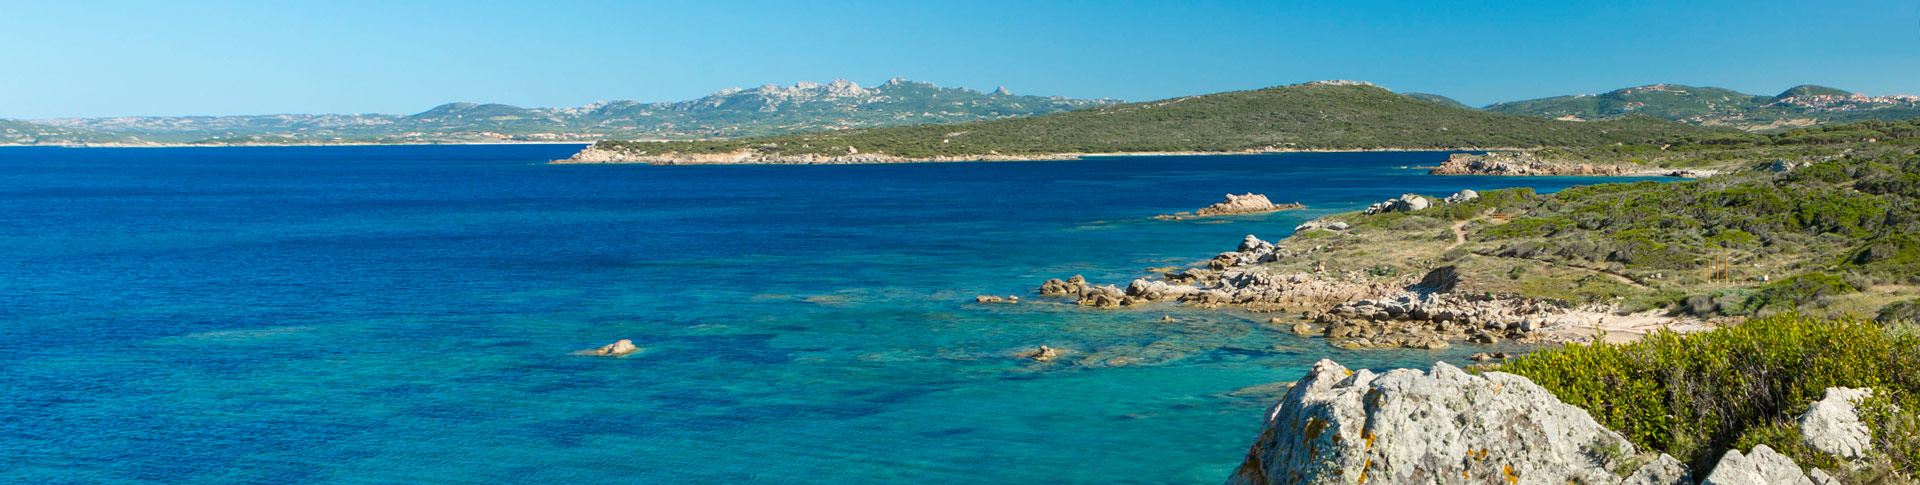 Un’esclusiva piscina con vista sul mare della Sardegna